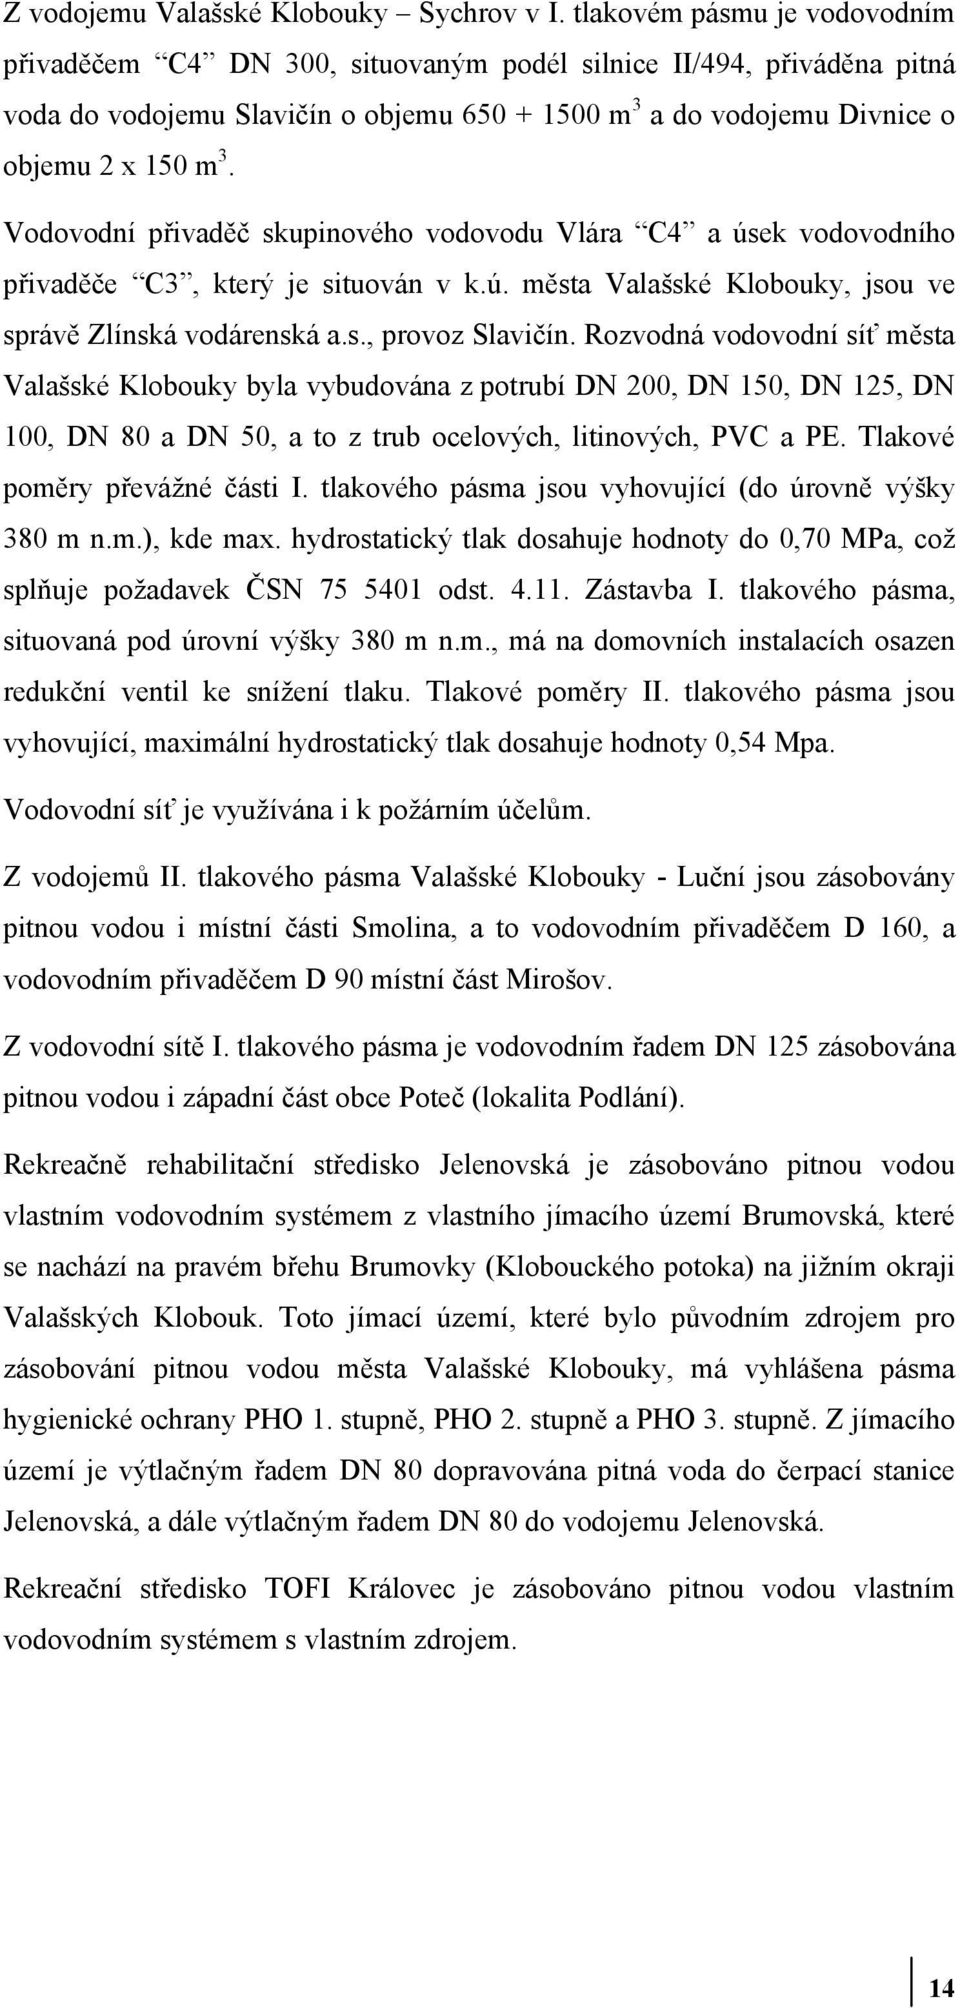 Profil města. Valašské Klobouky - PDF Stažení zdarma